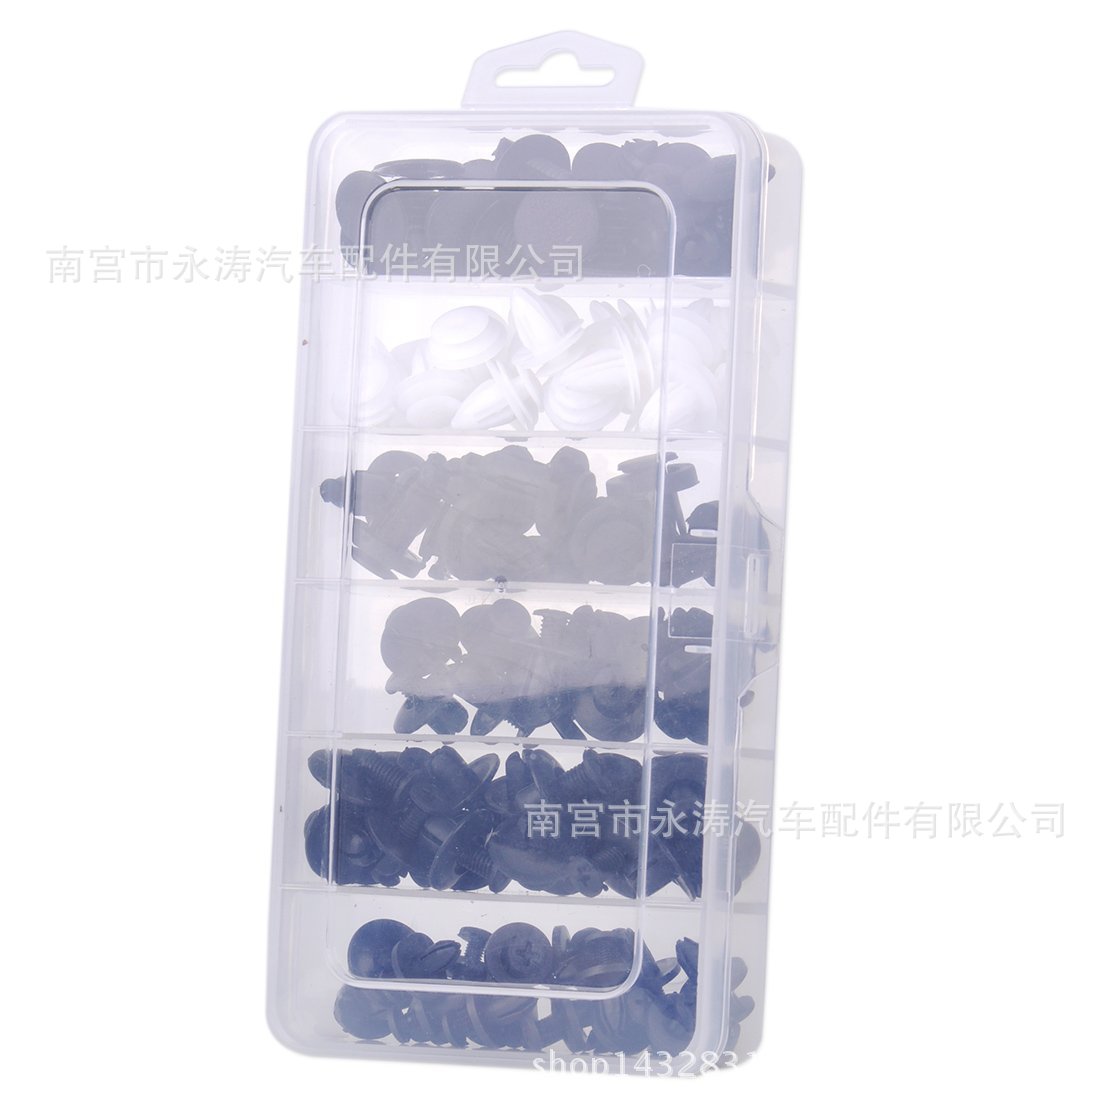 盒装卡扣 100pcs适用于汽车车门挡泥板紧固夹子塑料铆钉固定夹